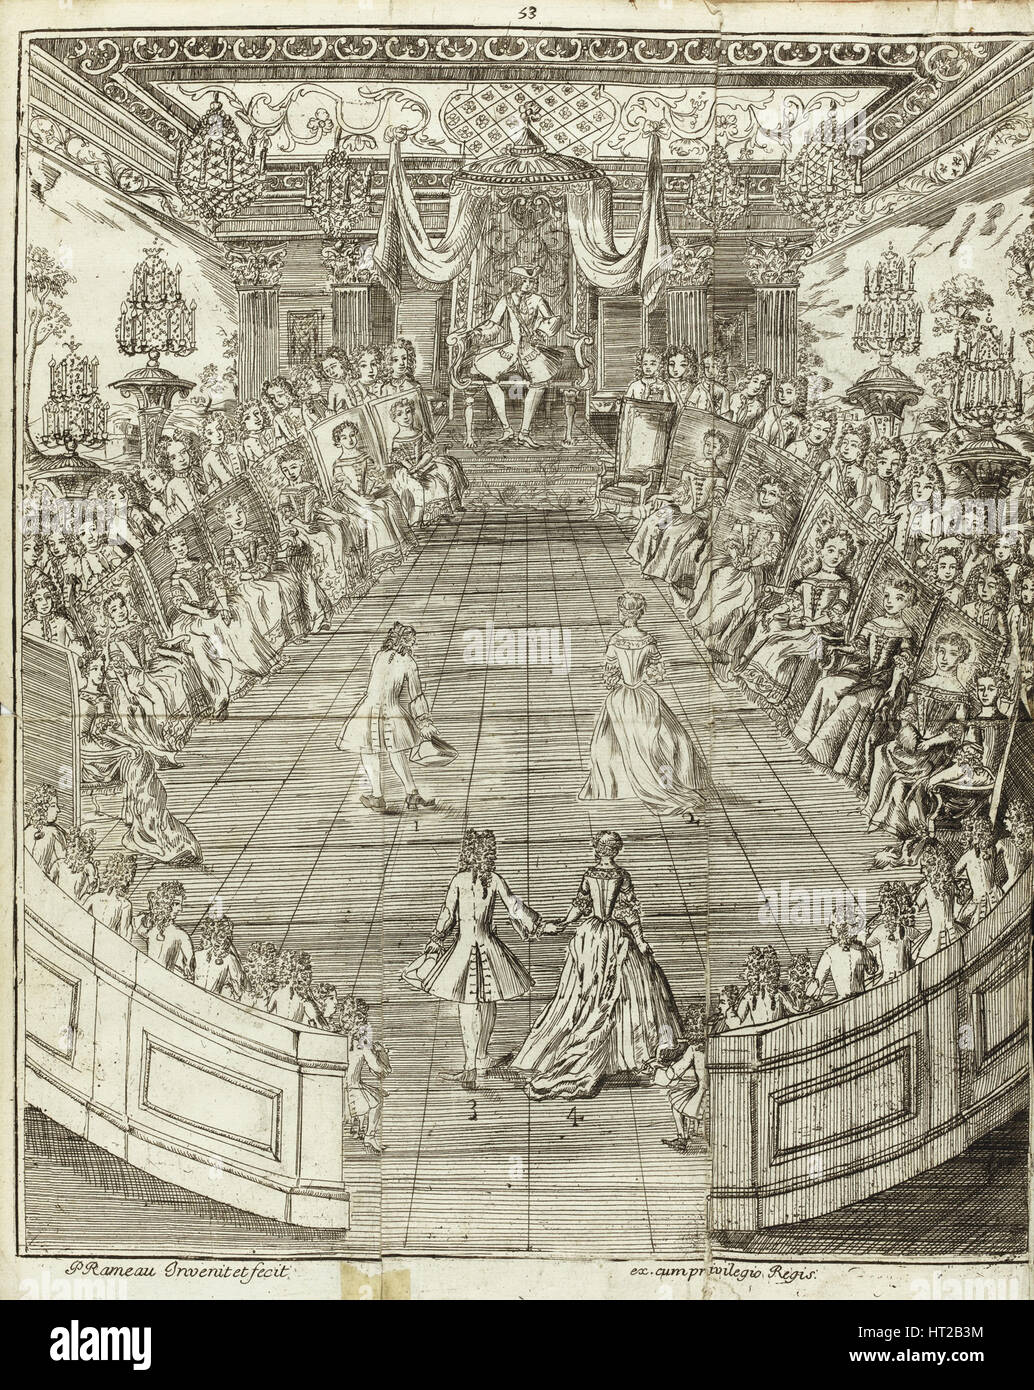 Illustration from Le Maître à danser, 1734. Artist: Rameau, Pierre (1674-1748) Stock Photo